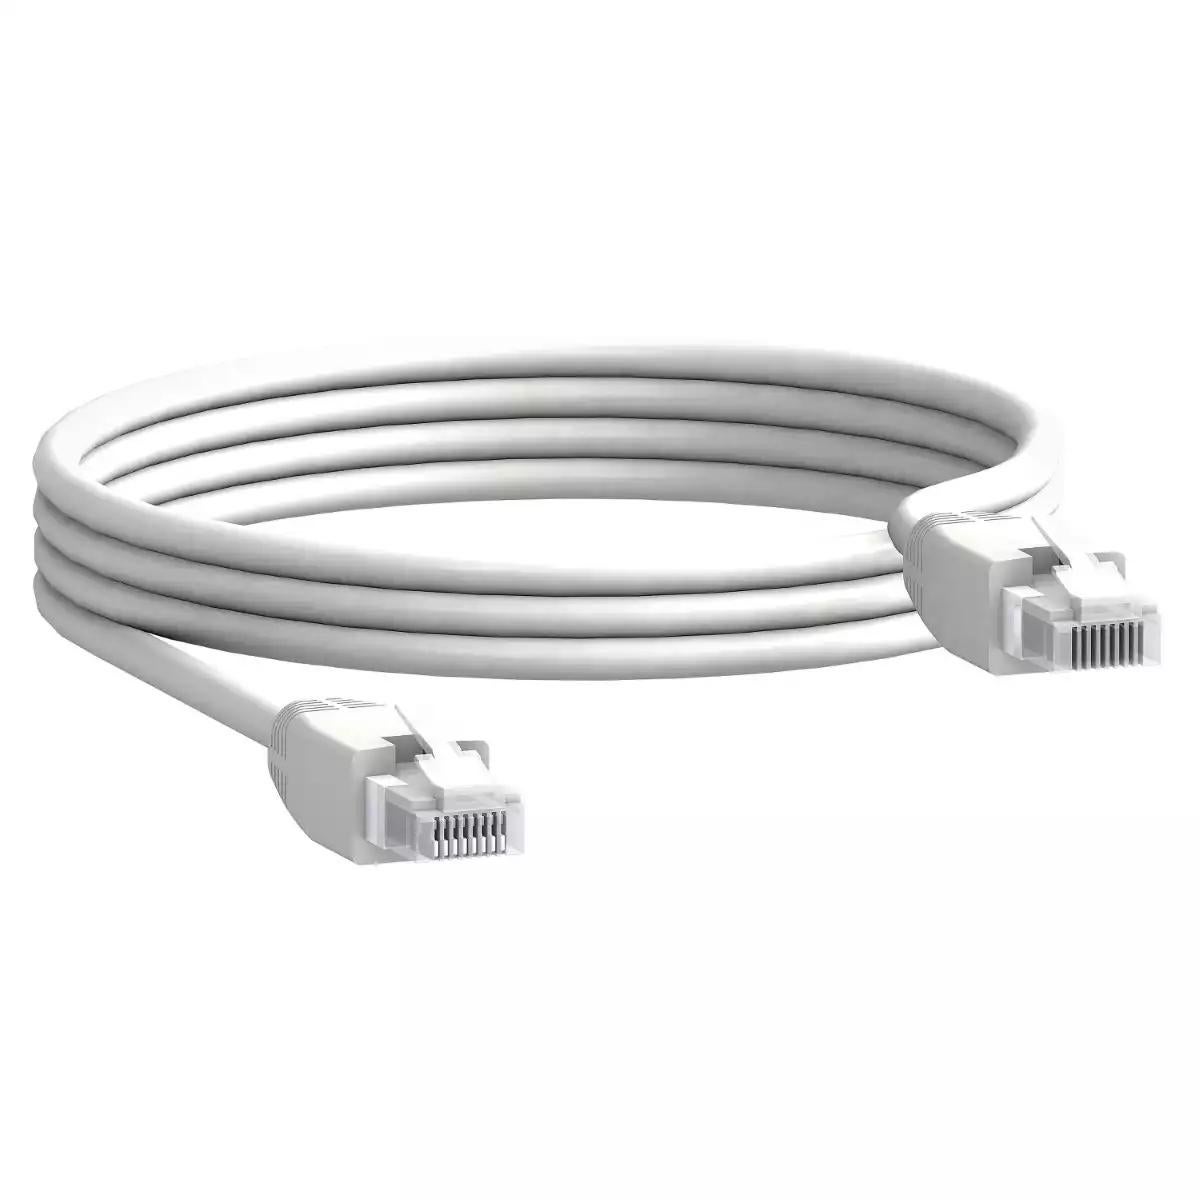 Communication cable, 2 x RJ45 male connectors, 3 m length, set of 5 parts